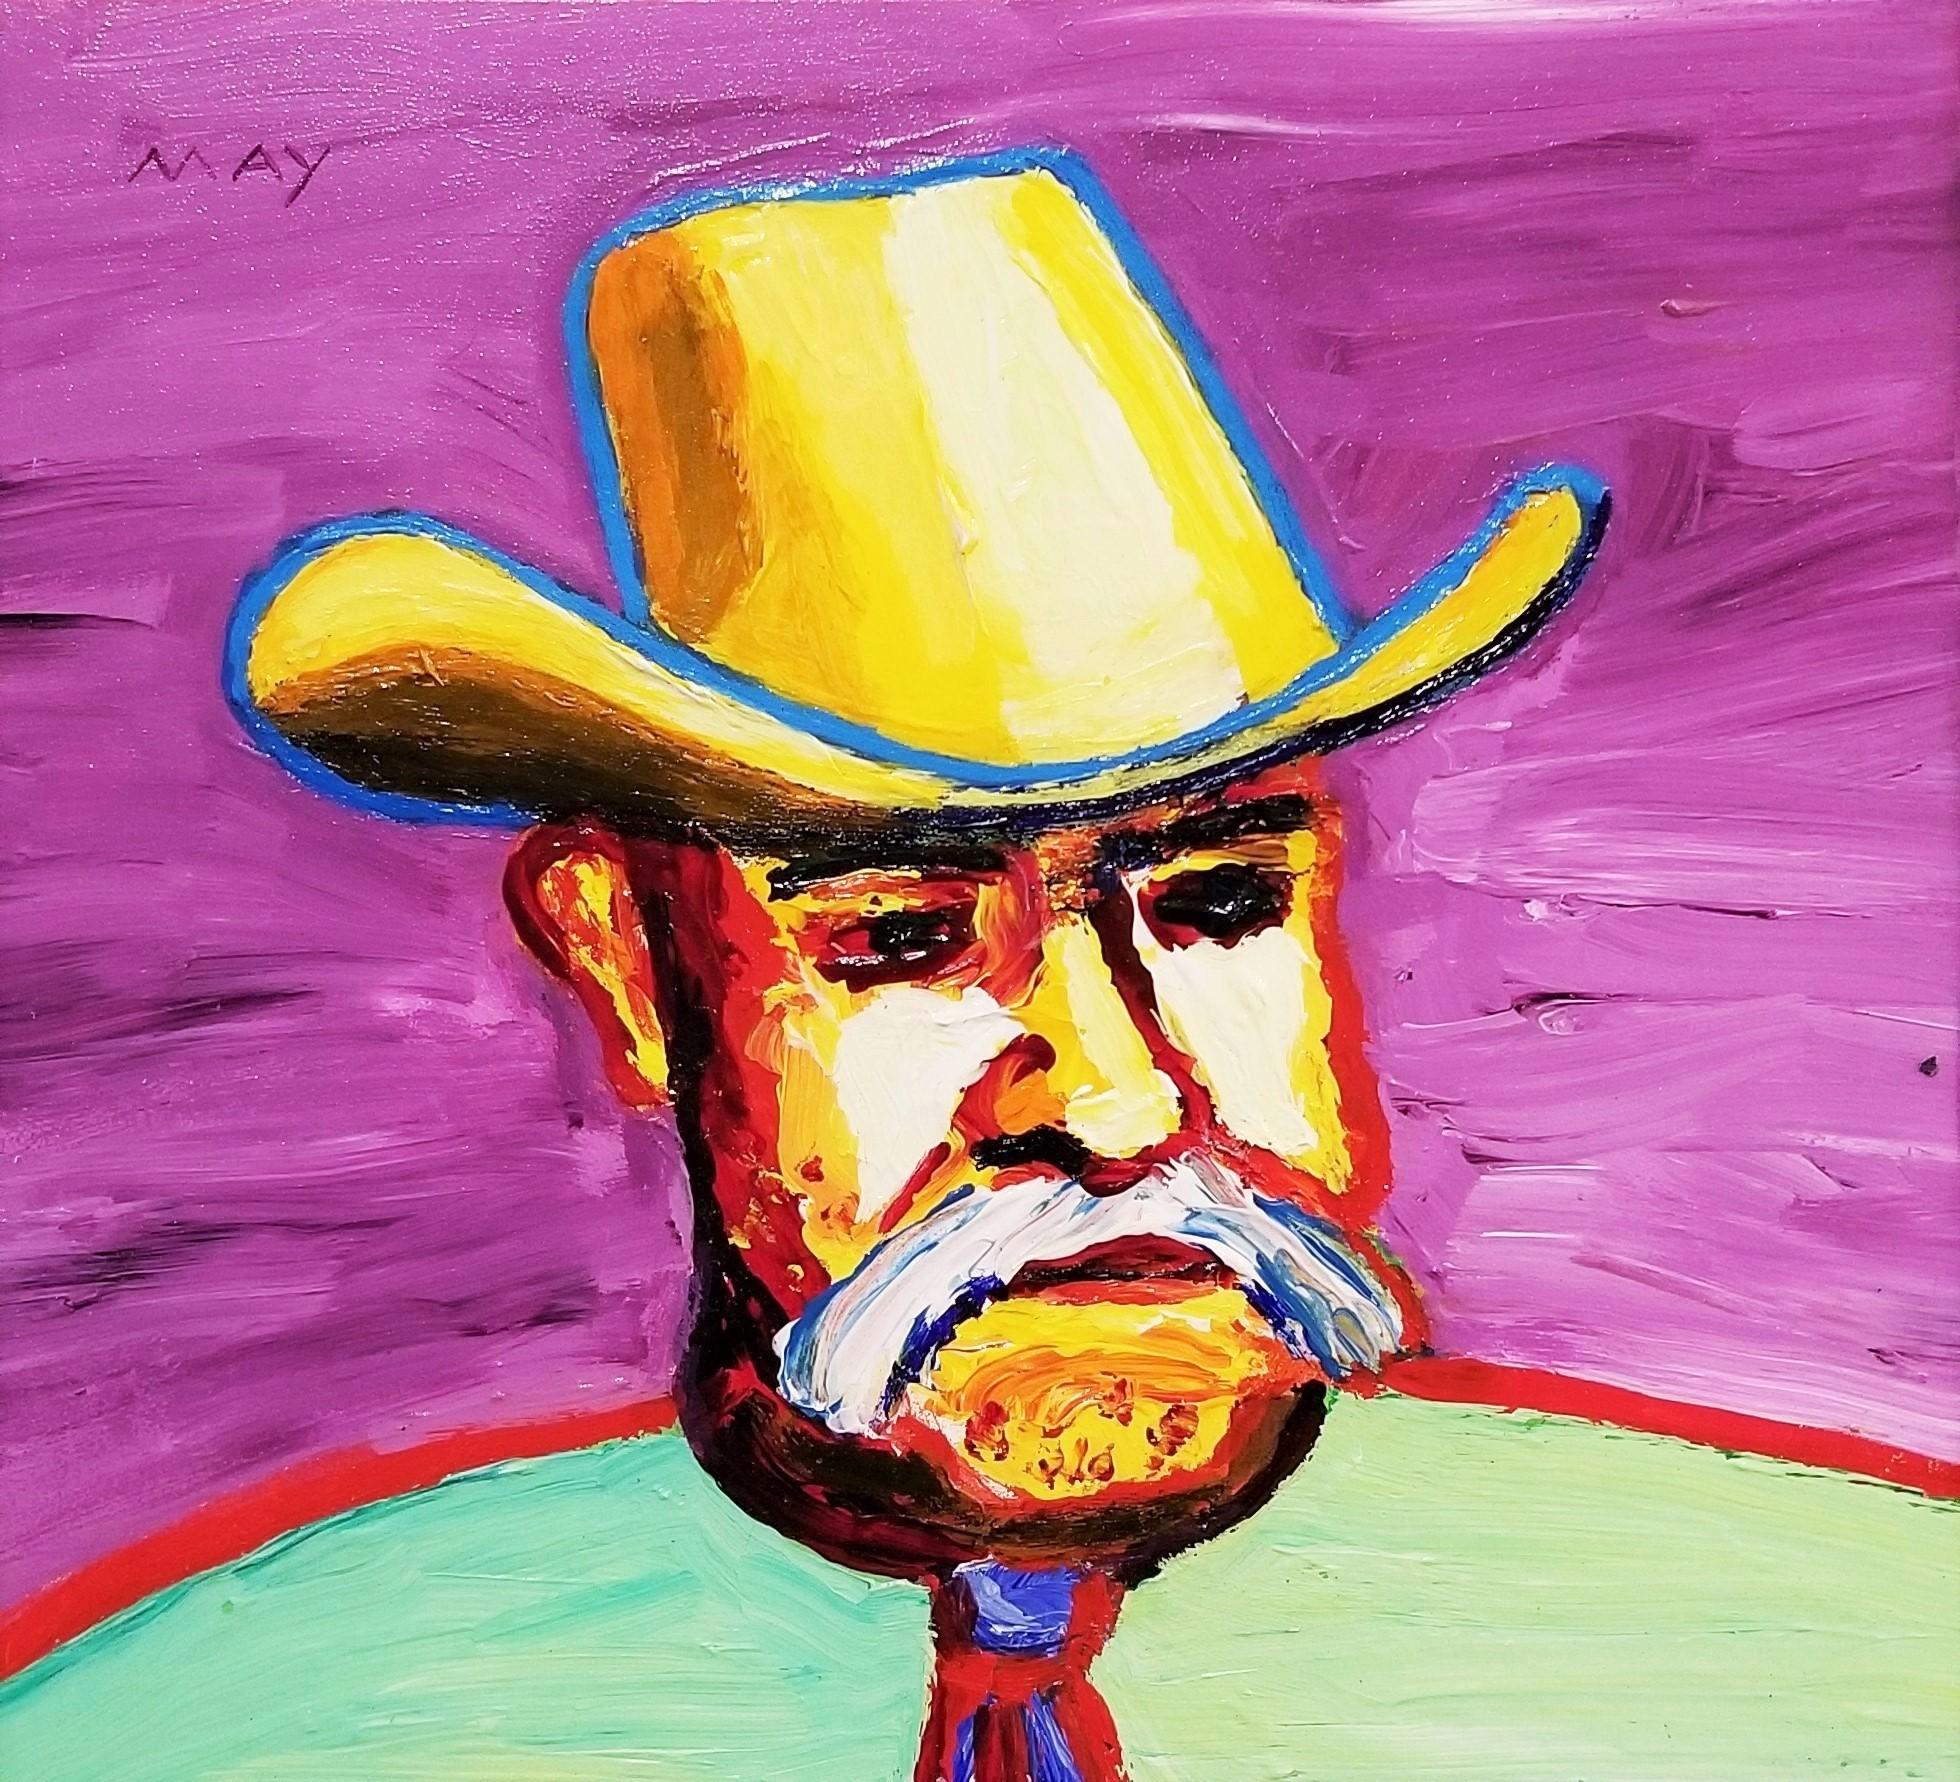 Künstler: Dan May (Amerikaner, 1955-)
Titel: "Cowboy"
*Signiert von May oben rechts
Circa: 2020
Medium: Original-Acryl-Gemälde auf Karton
Einrahmung: Gerahmt in einer zeitgenössischen schwarzen Leiste
Gerahmte Größe: 14" x 14"
Tafelgröße: 12" x